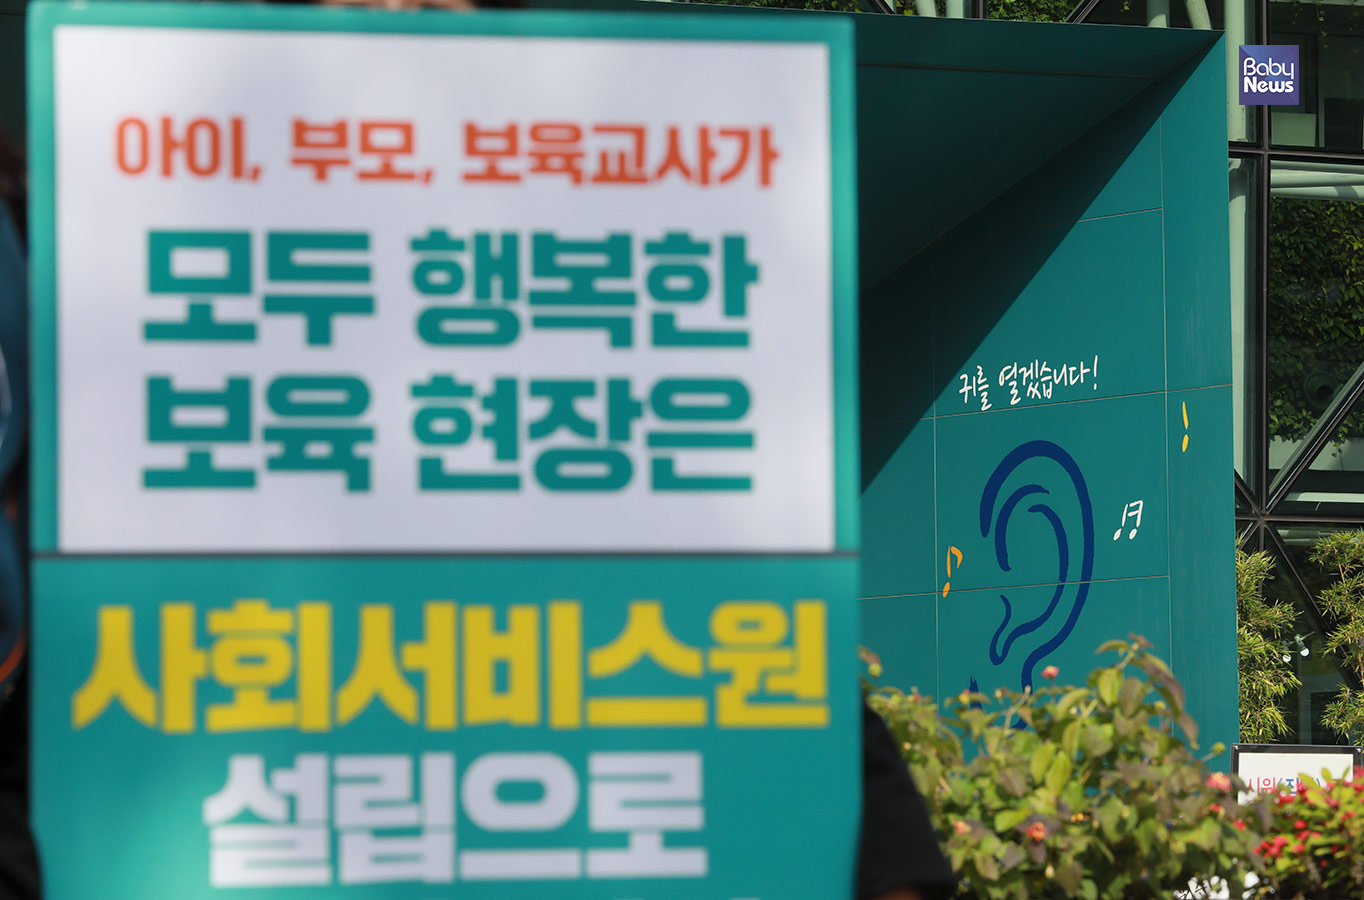 공공운수노조가 29일 오후 서울시청 정문 앞에서 제대로 된 사회서비스원 설립을 위한 공공운수노조 농성 돌입 기자회견을 하고 있다. 최대성 기자 ⓒ베이비뉴스